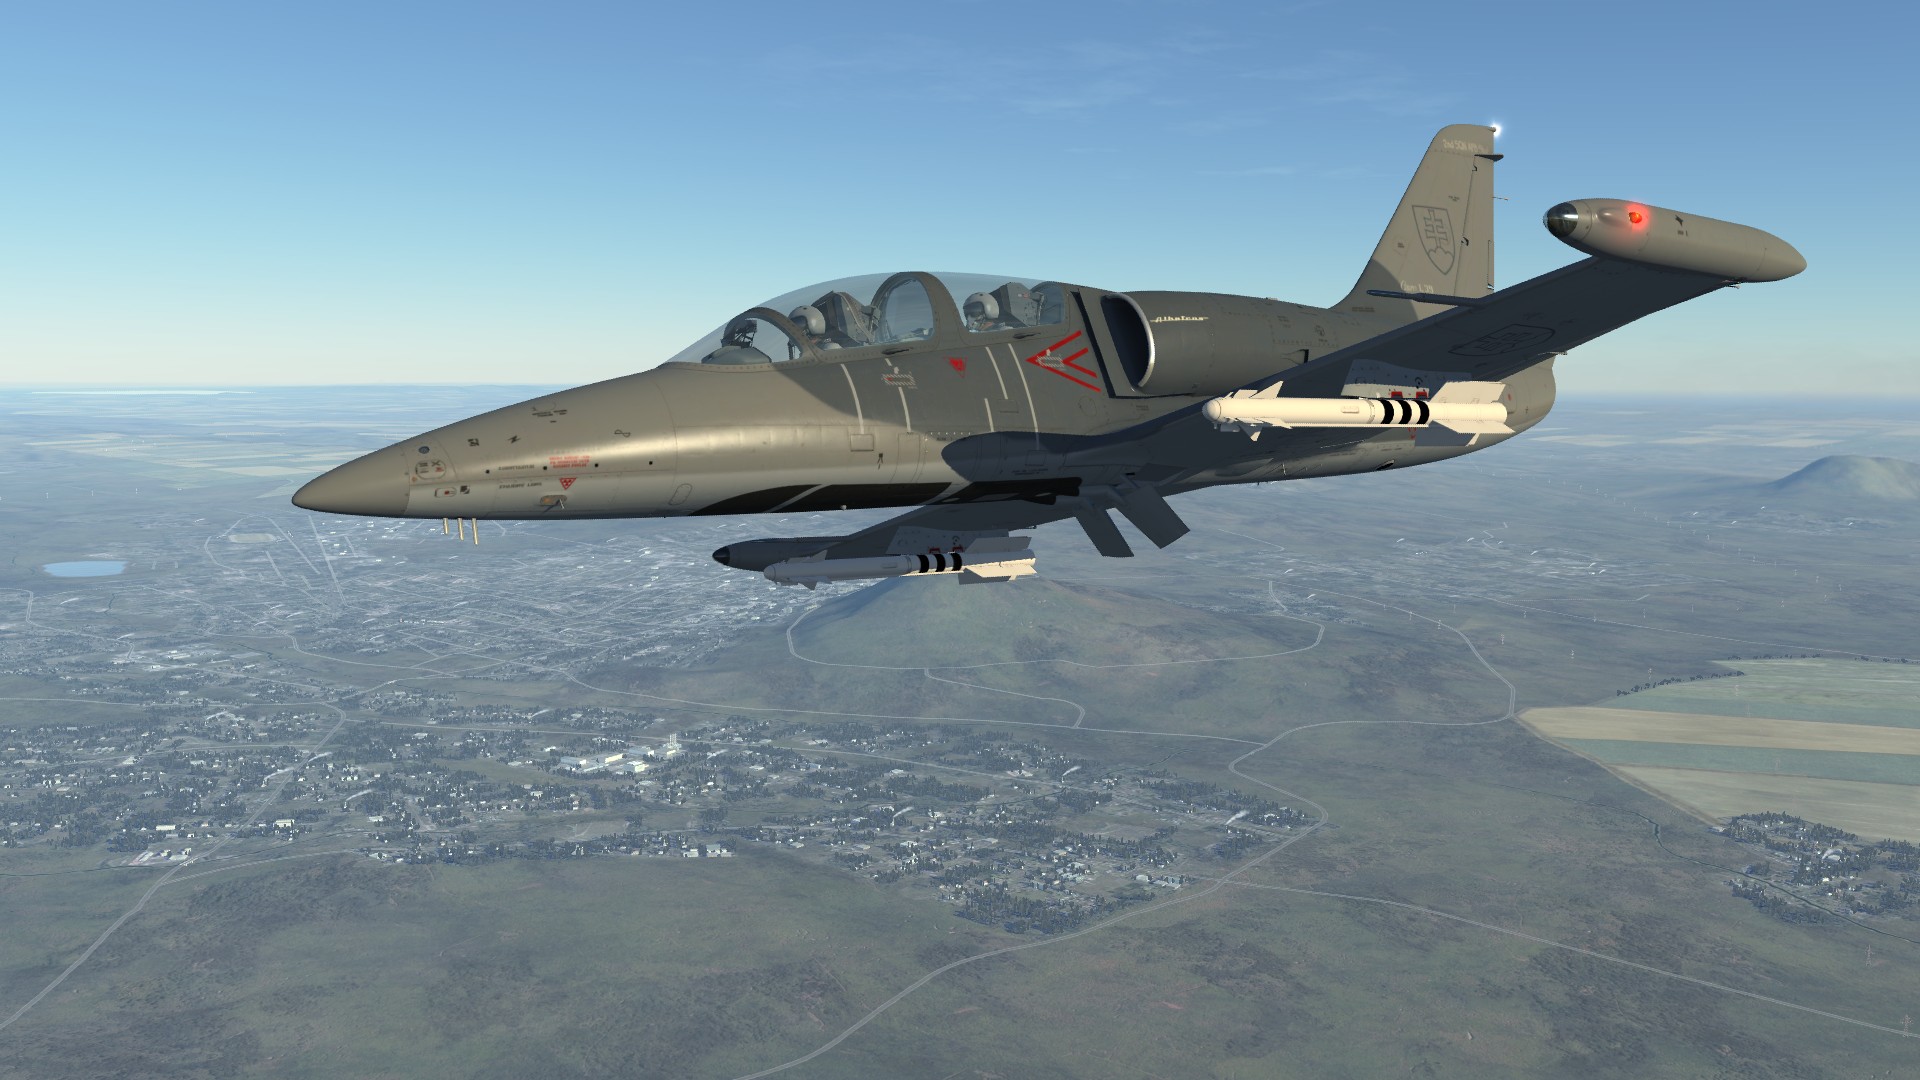 DCS: L-39 Albatros screenshot